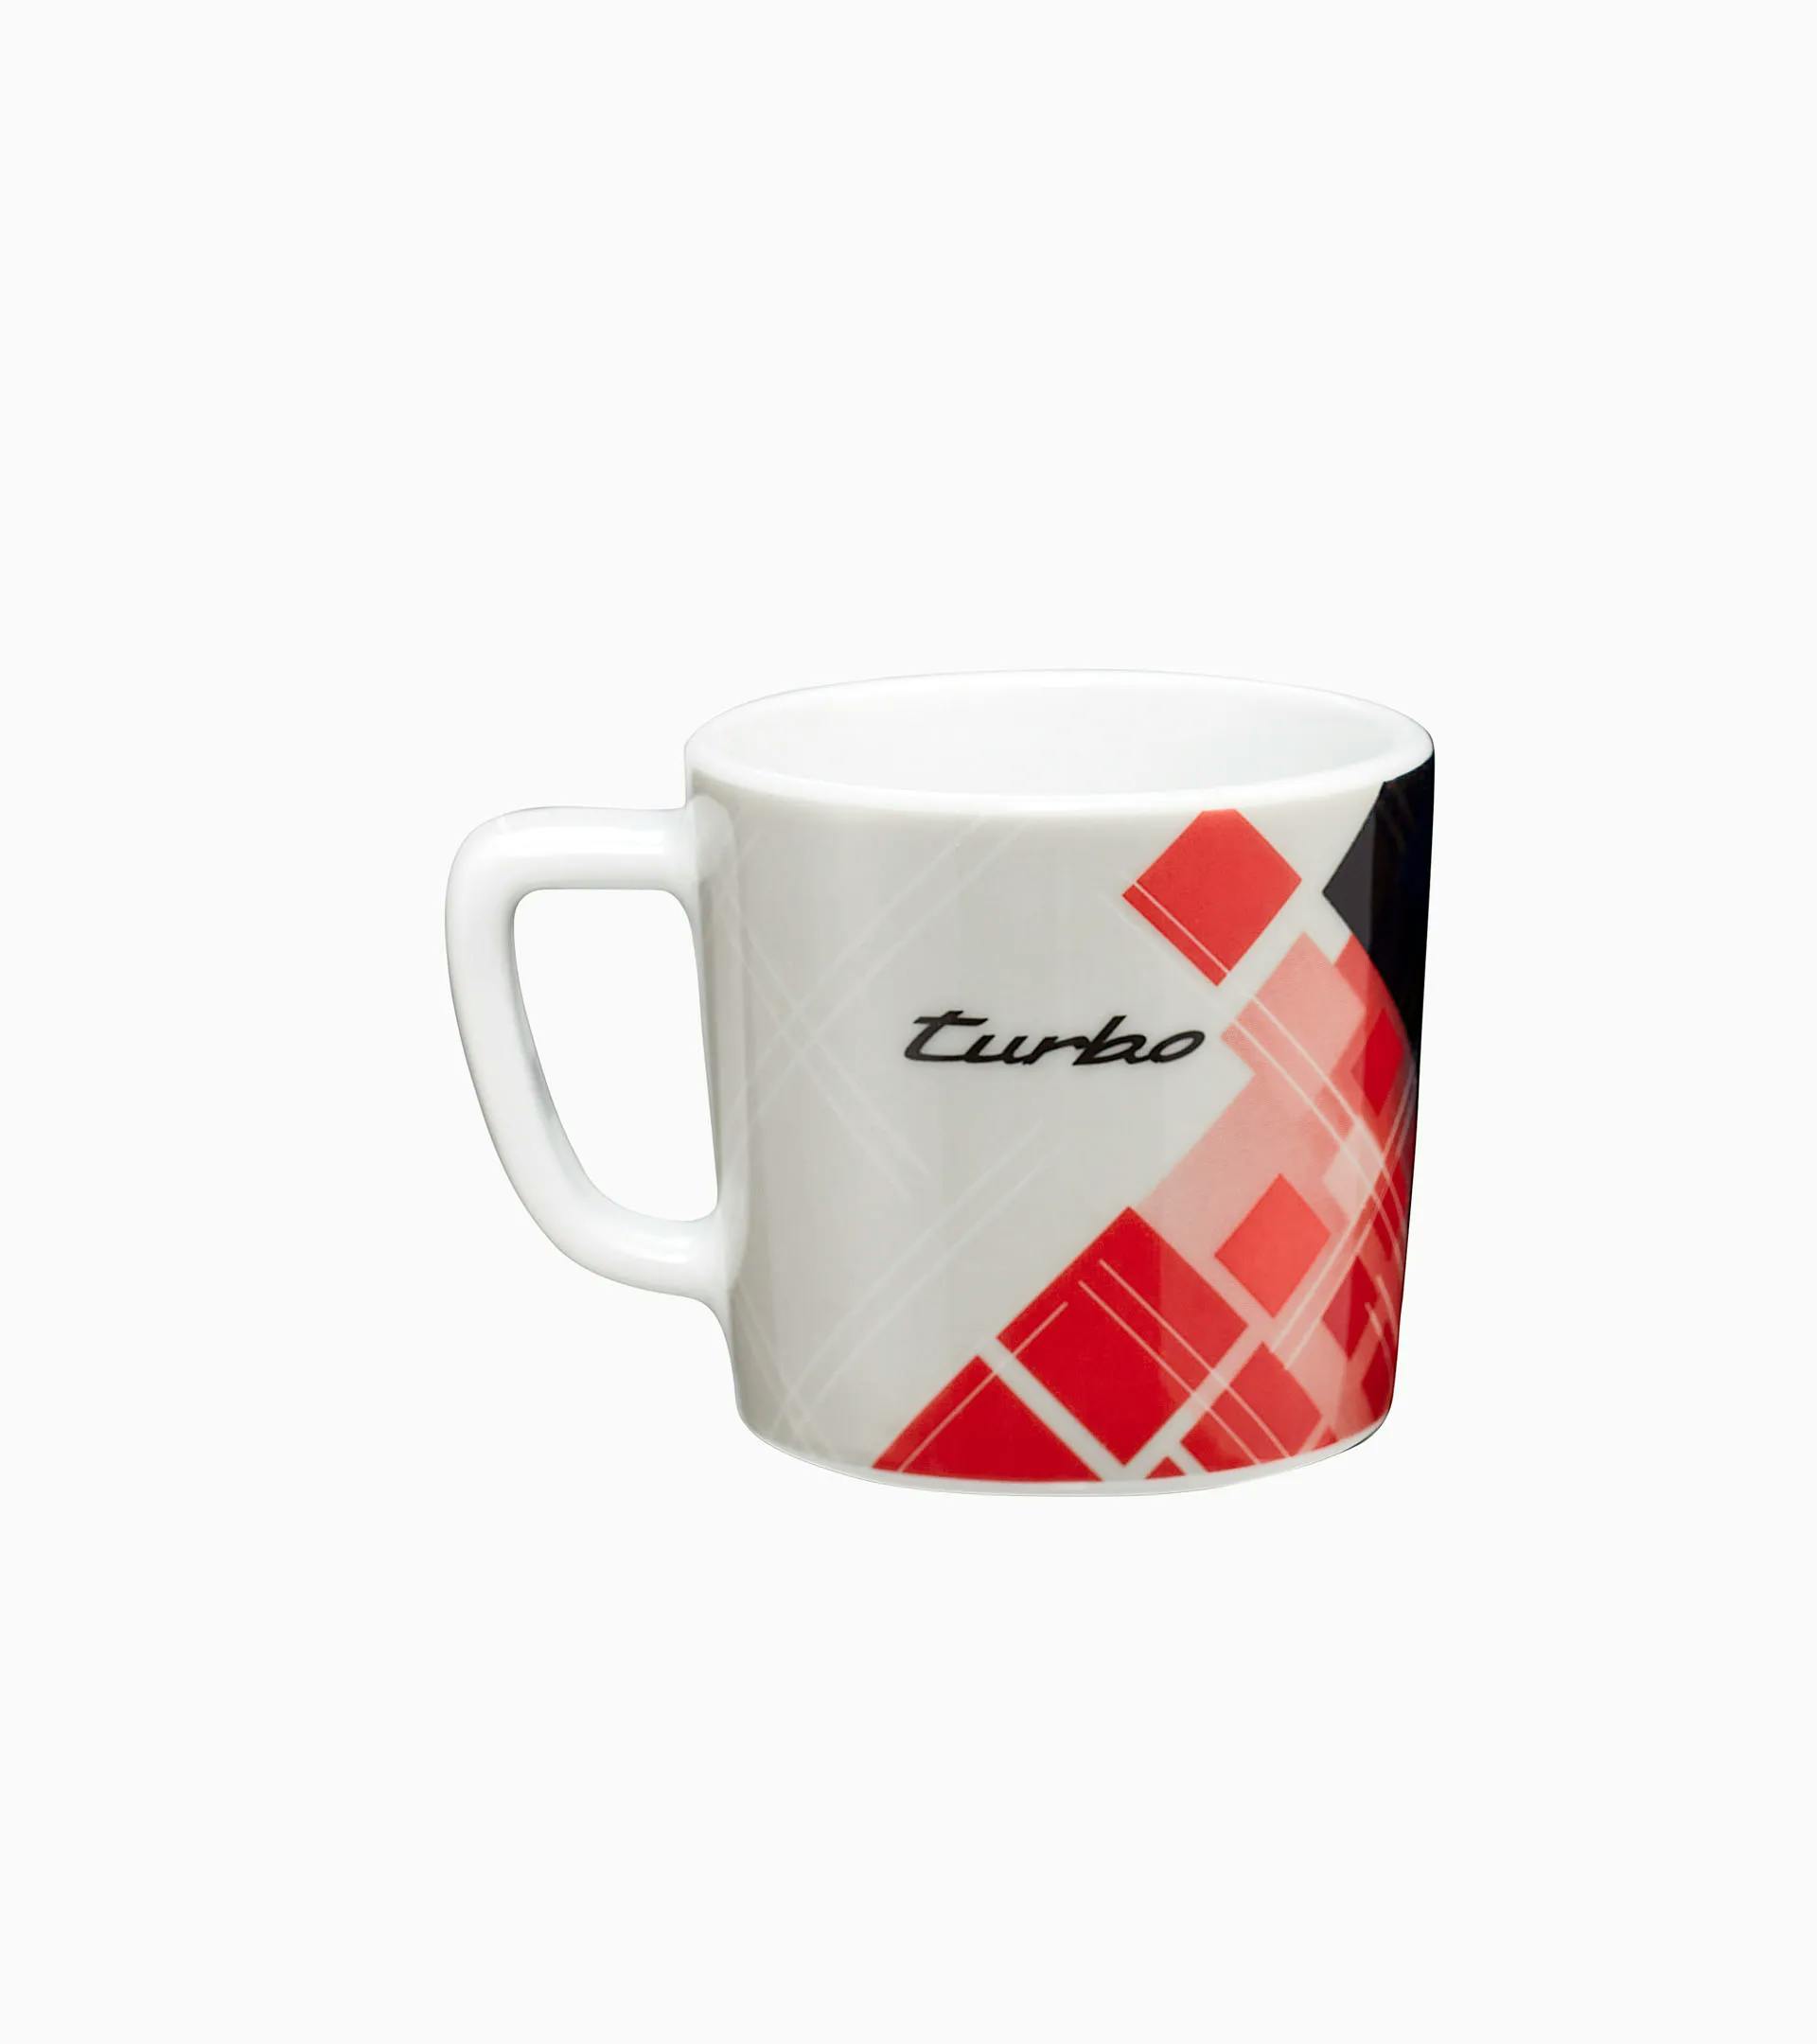 Porsche Collector's Espresso Cup No. 6 - Turbo No. 1 1